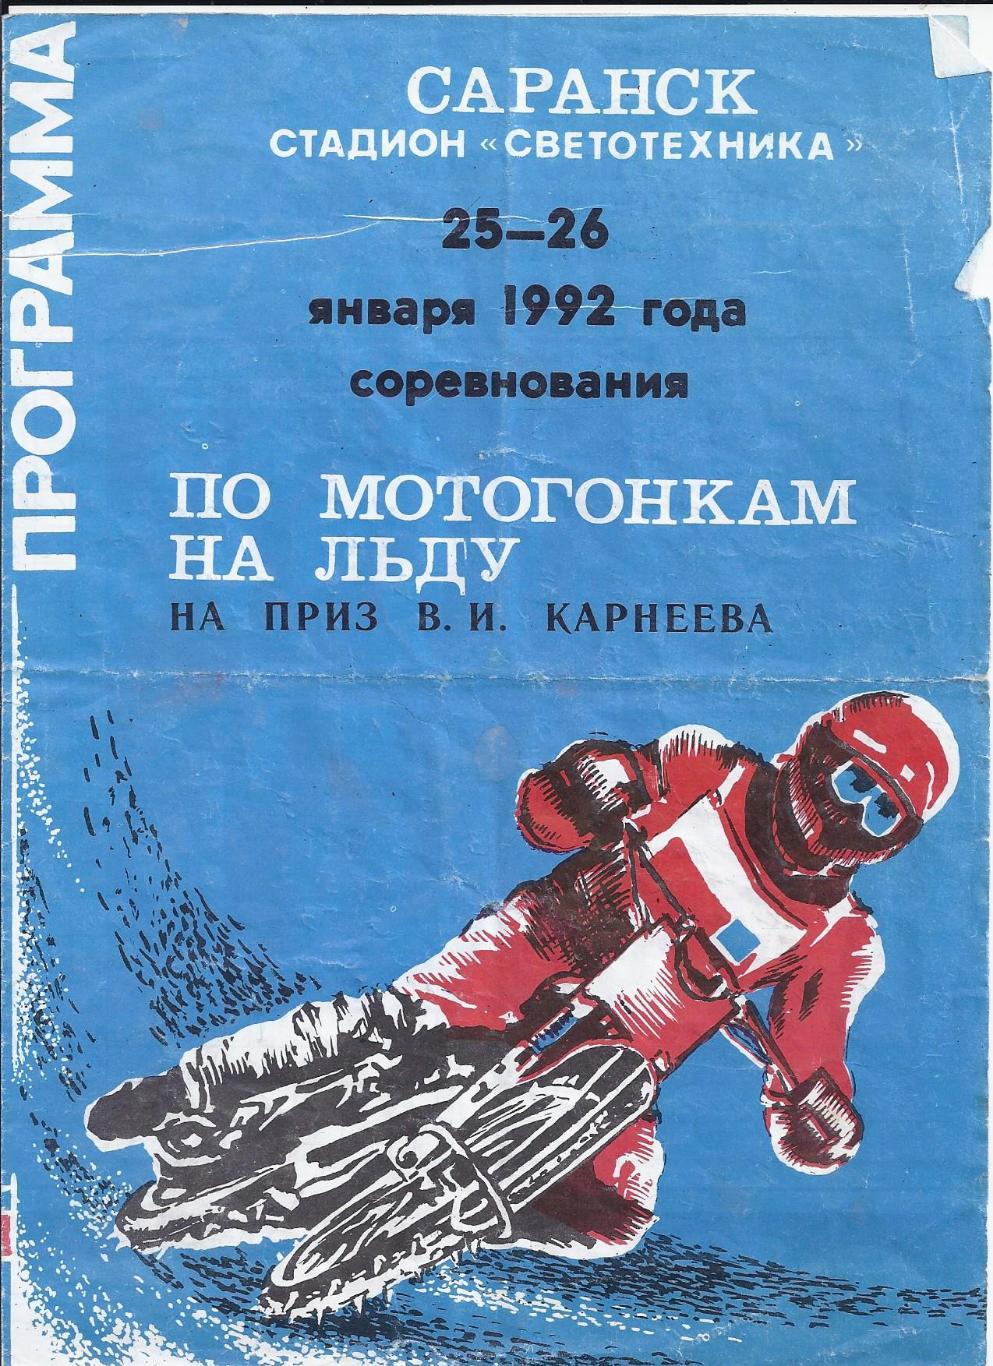 25-26.01.1992 Спидвей по мотогонкам на льду на приз В.И.Карнеева